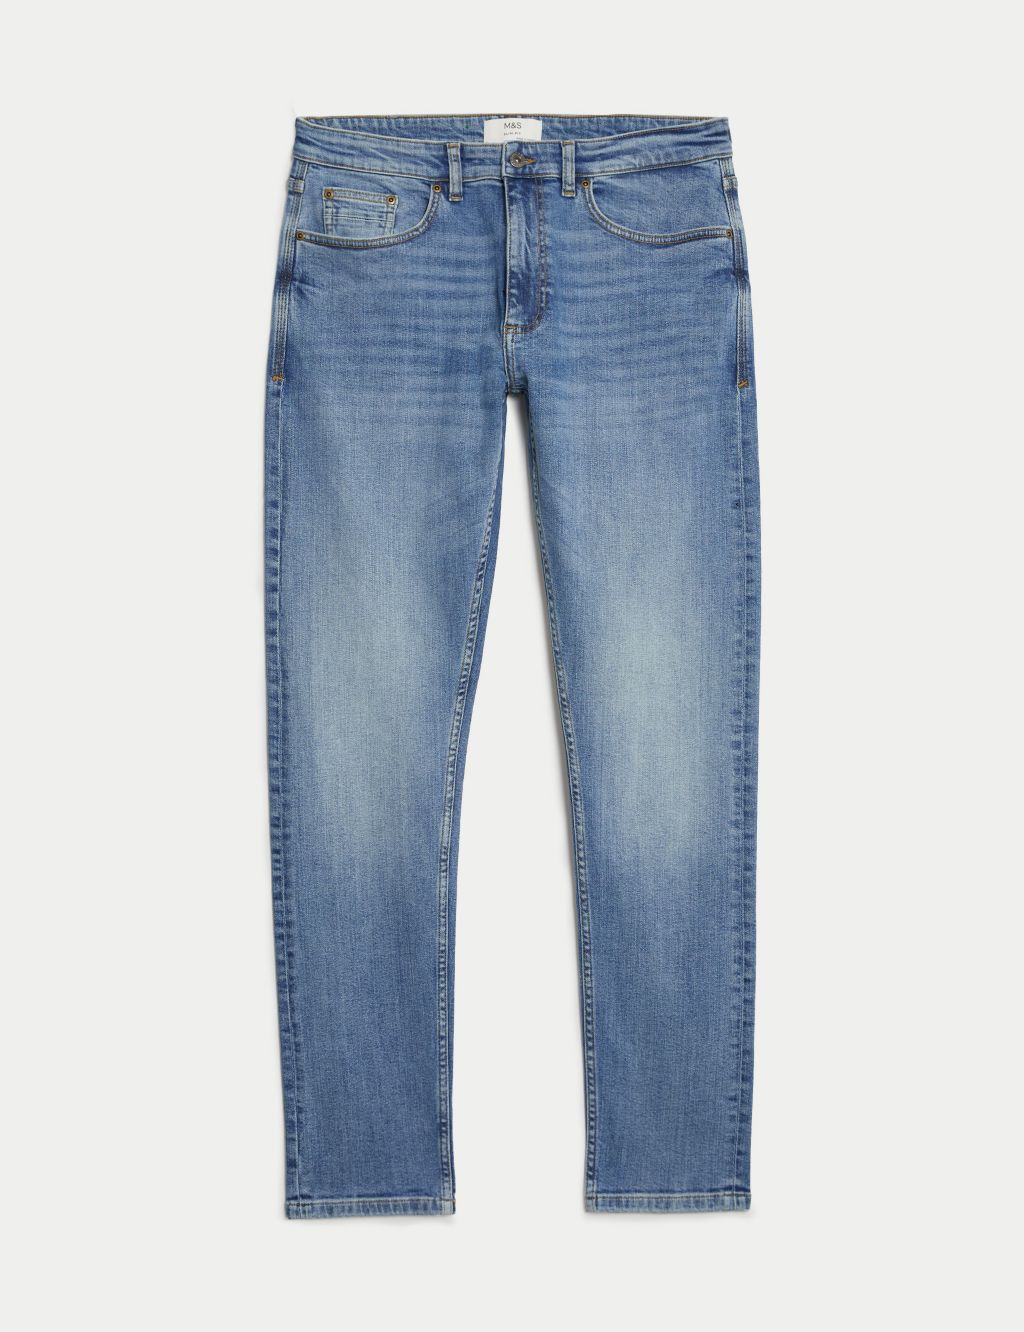 Slim Fit Vintage Wash Stretch Jeans 1 of 6